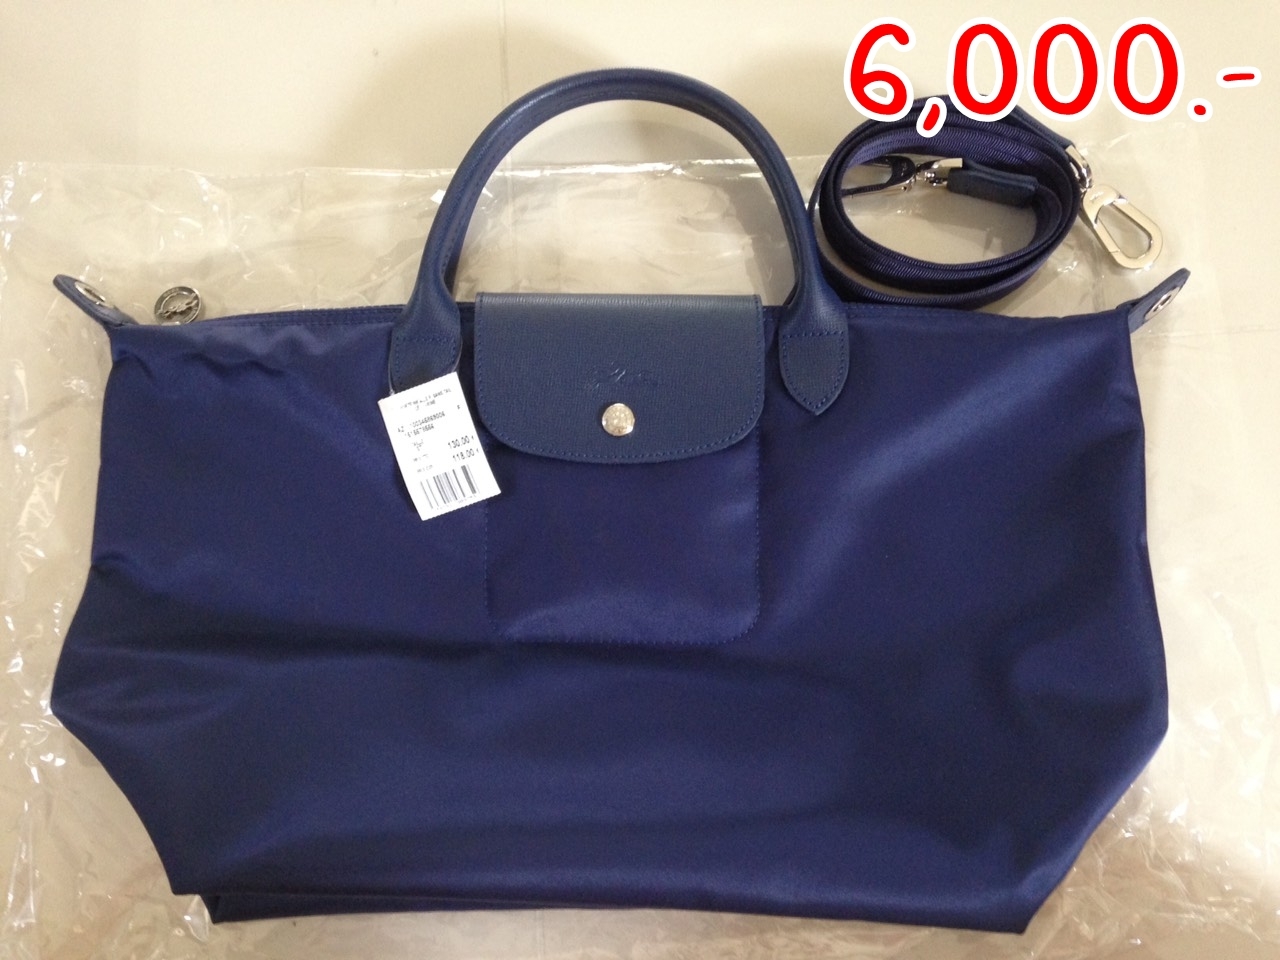 "ราคา 6,000 บาท ยี่ห้อ Longchamp Neo สี Navy Size M (32x28x17 cm) สภาพ มือ 1 ไม่มีตำหนิ"